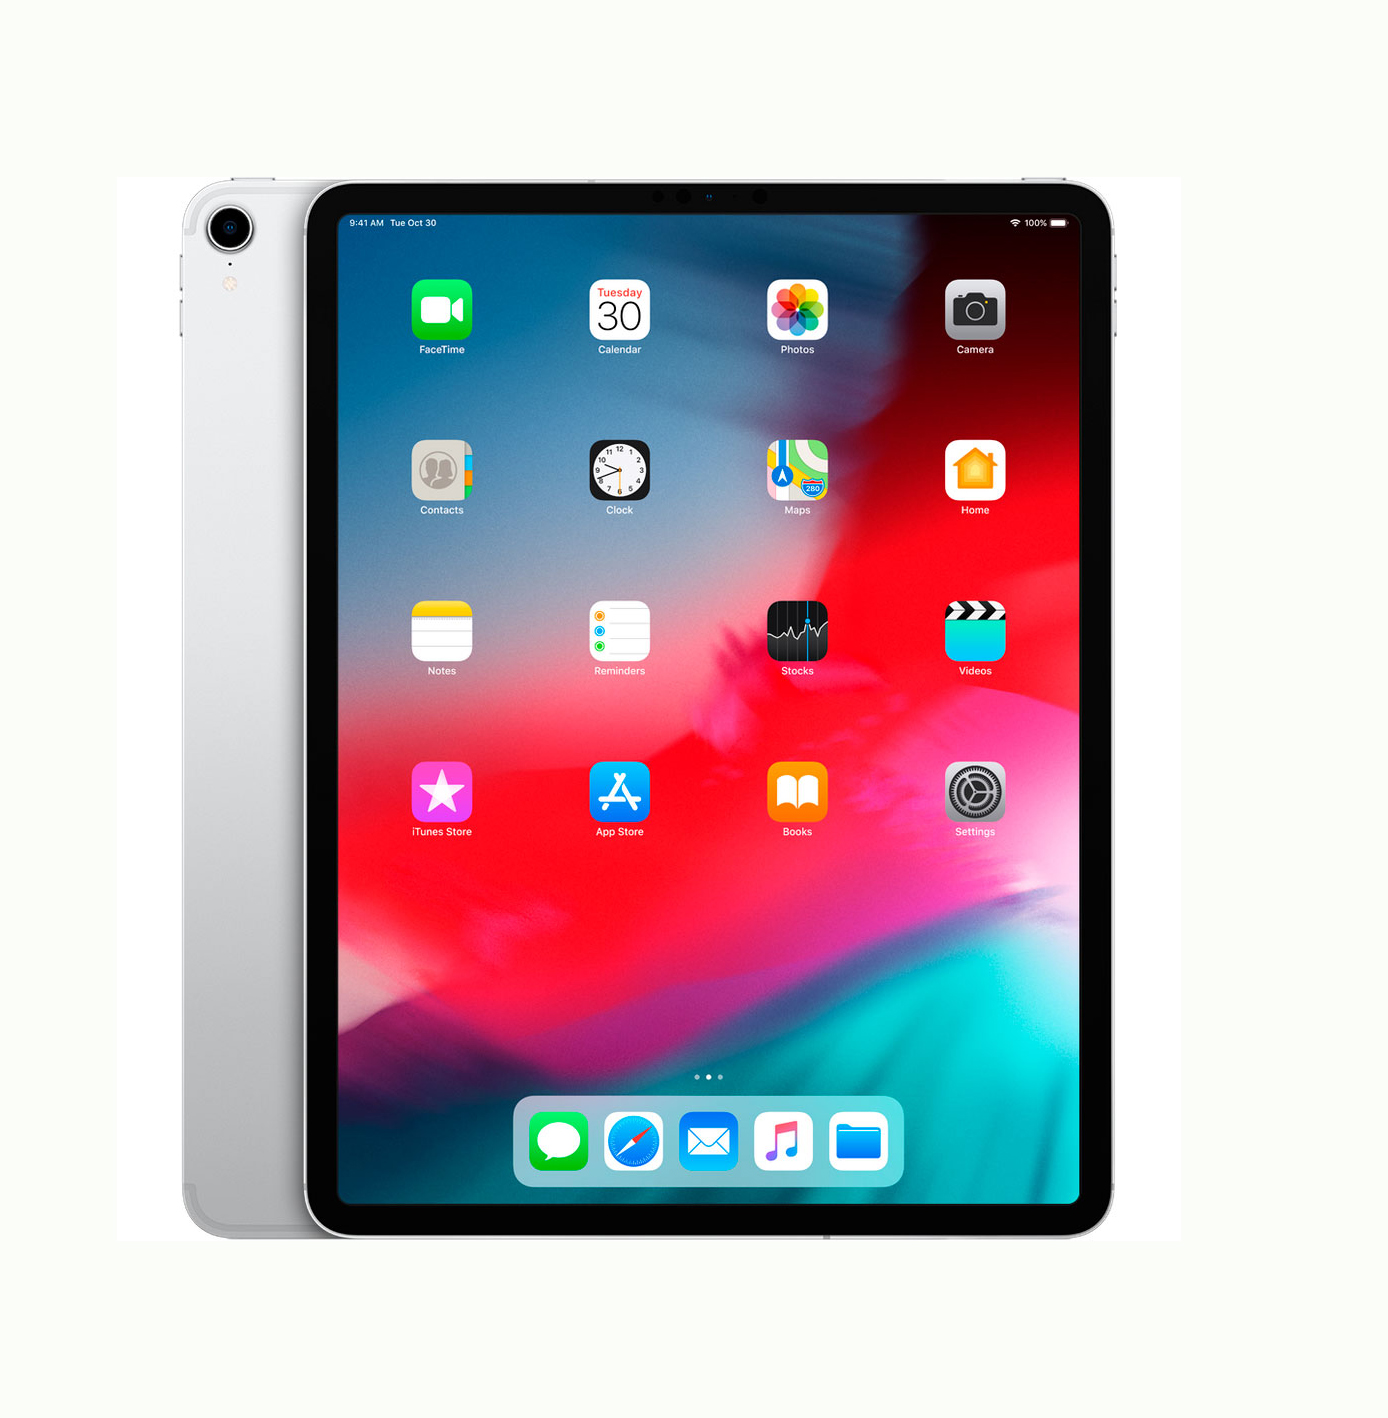 Apple iPad Pro 12.9 2018 Wi-Fi 256GB Silver (MTFN2)